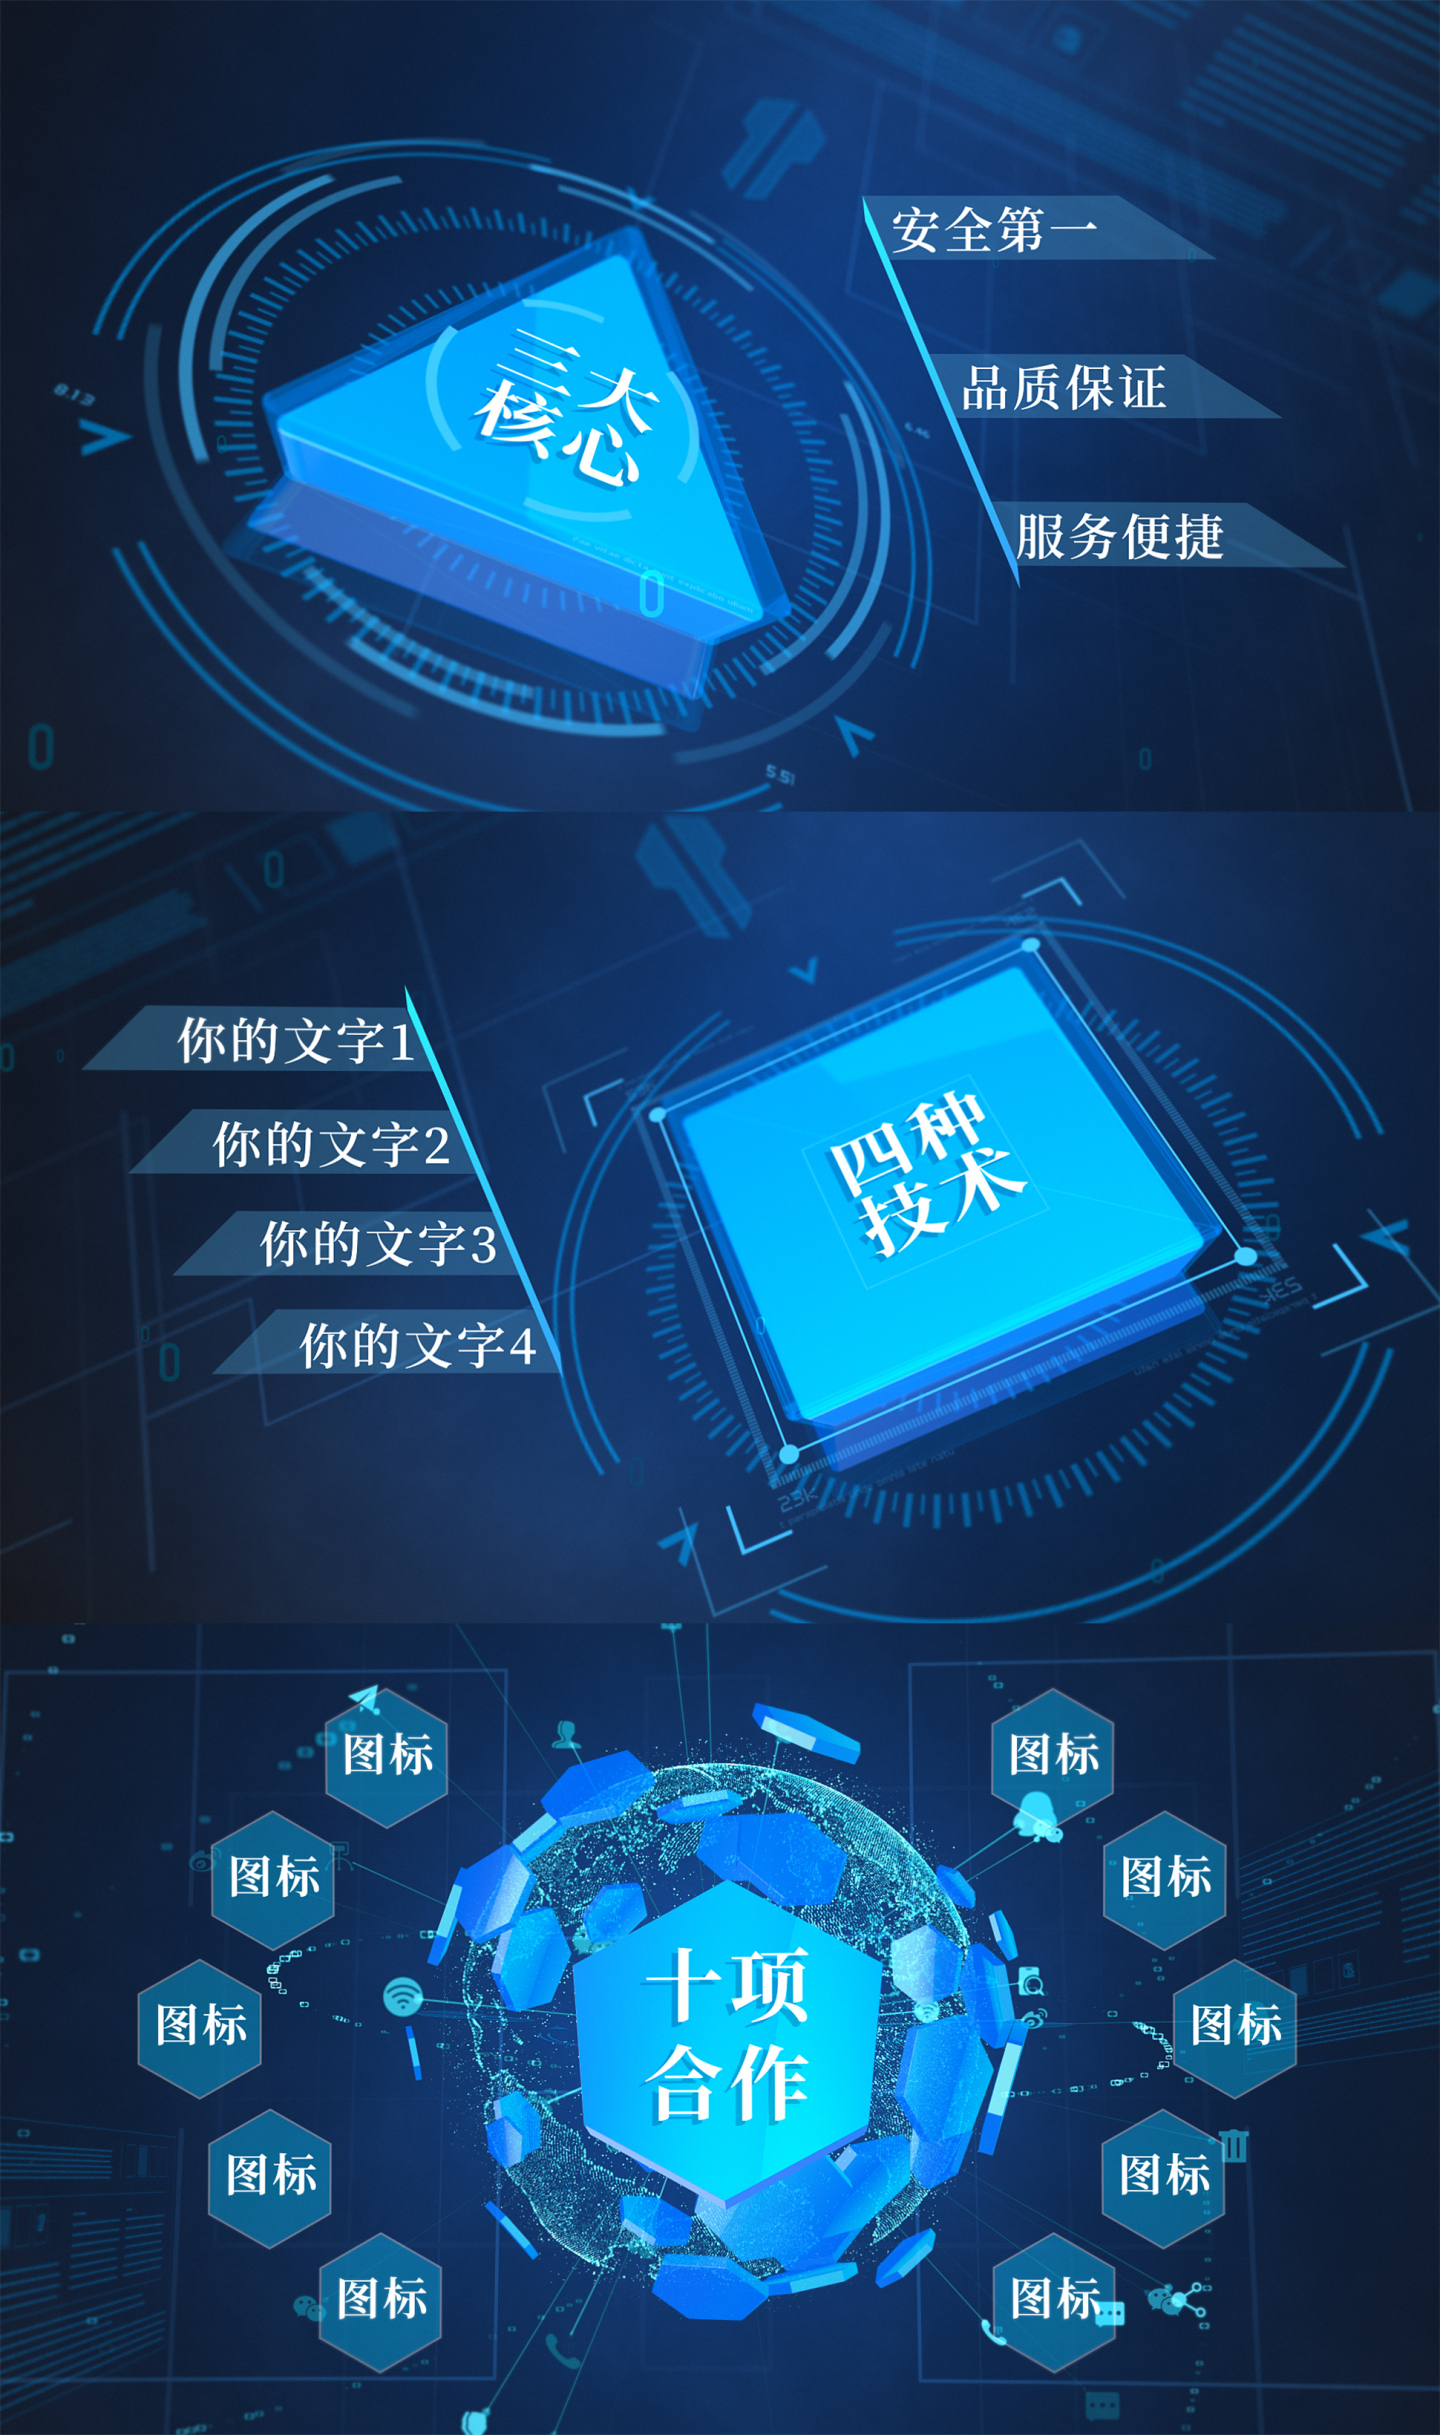 【无需插件】蓝色科技商务展示模板